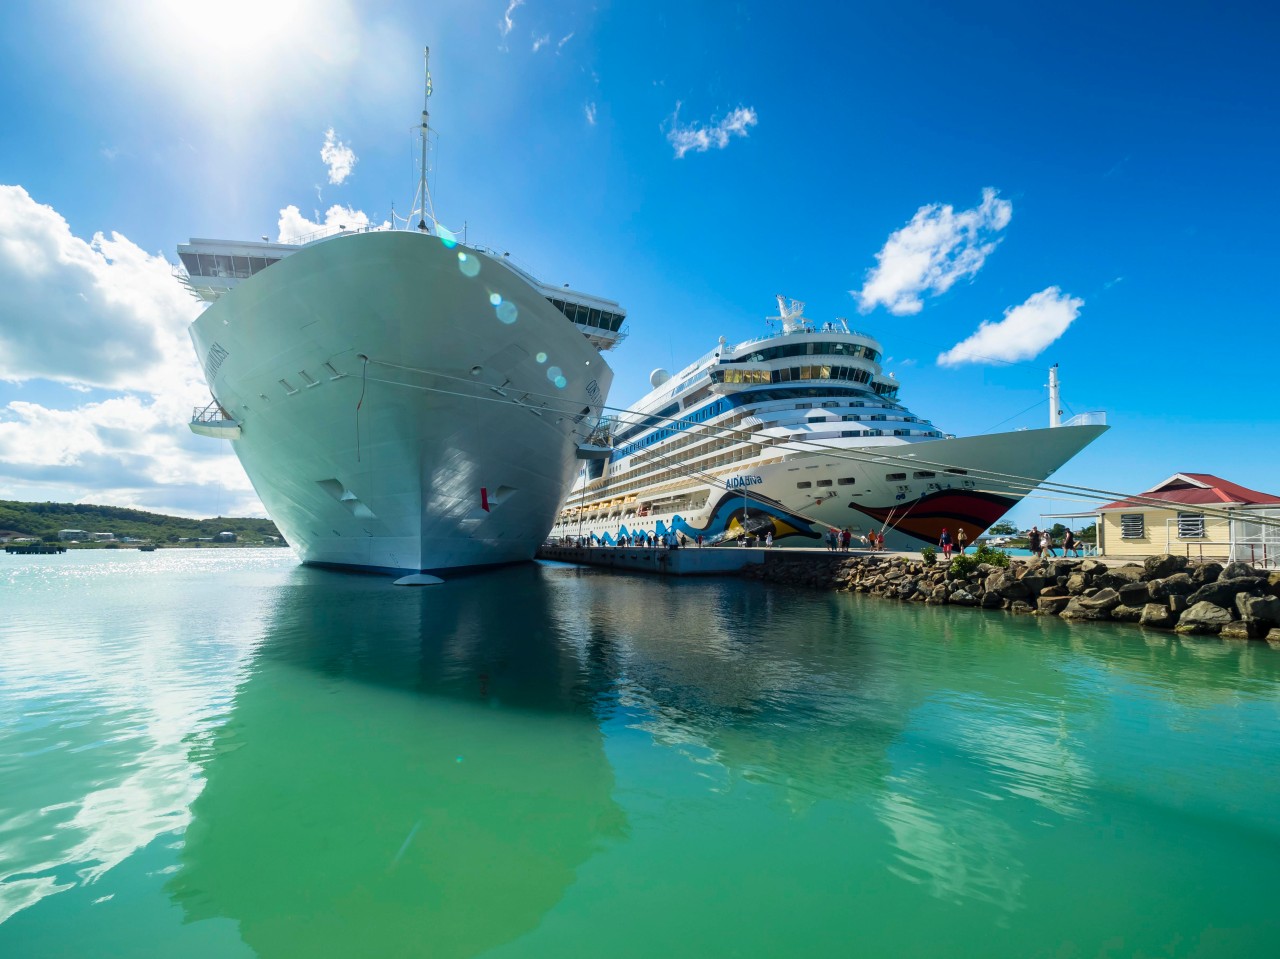 Ein Aida-Schiff im türkisblauen Karibik-Wasser.